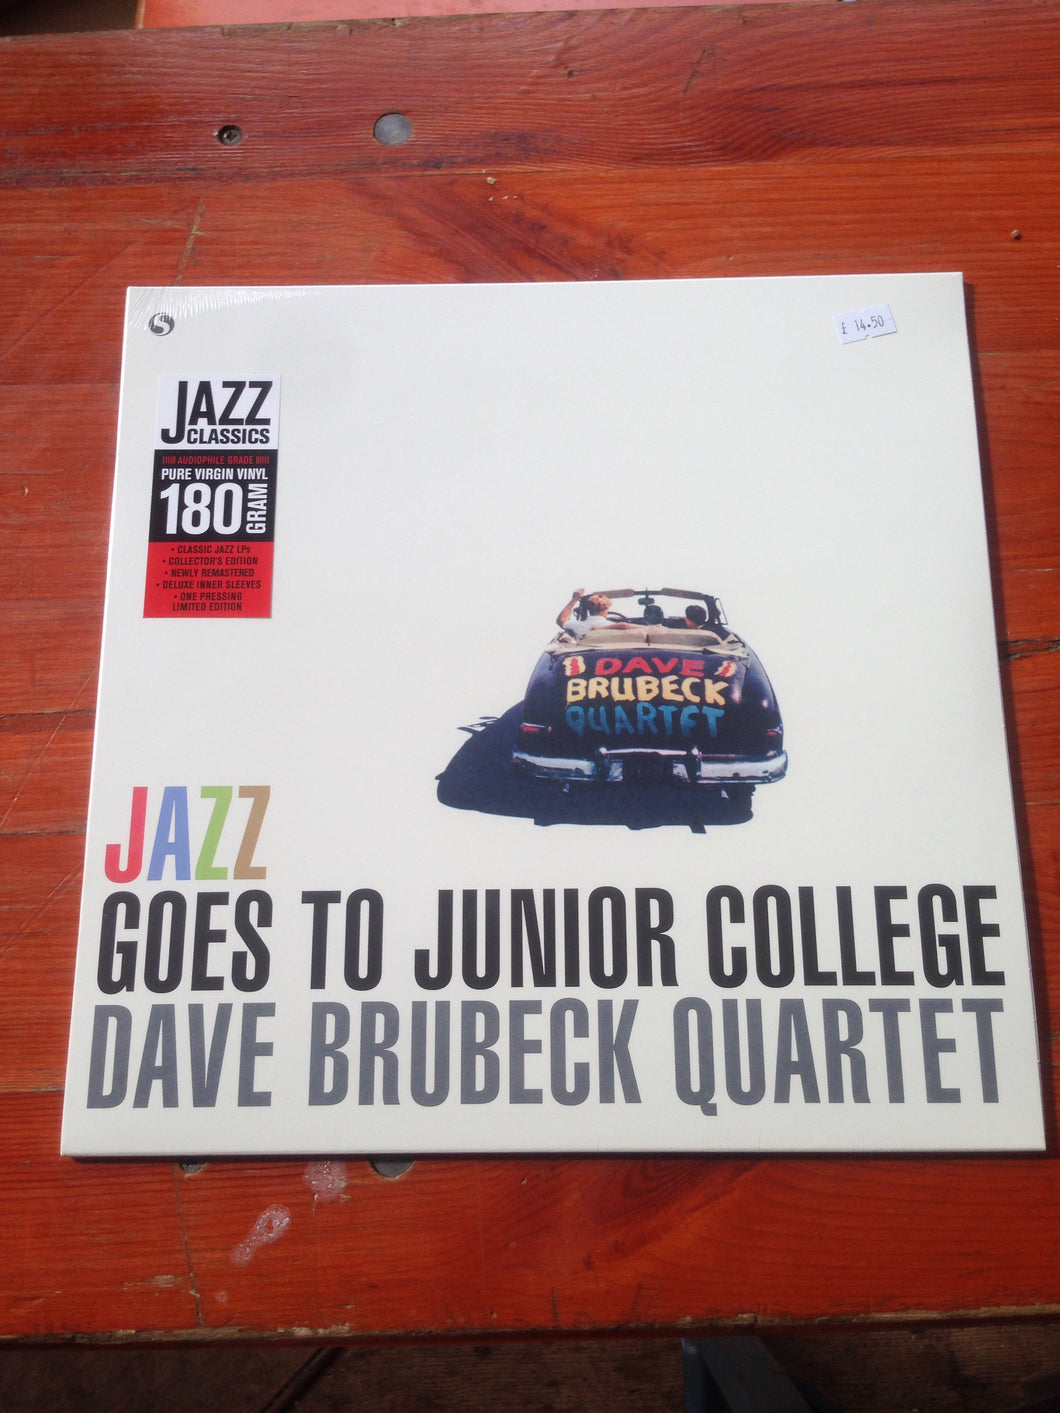 Dave Brubeck Quartet - Jazz Goes To Junior College